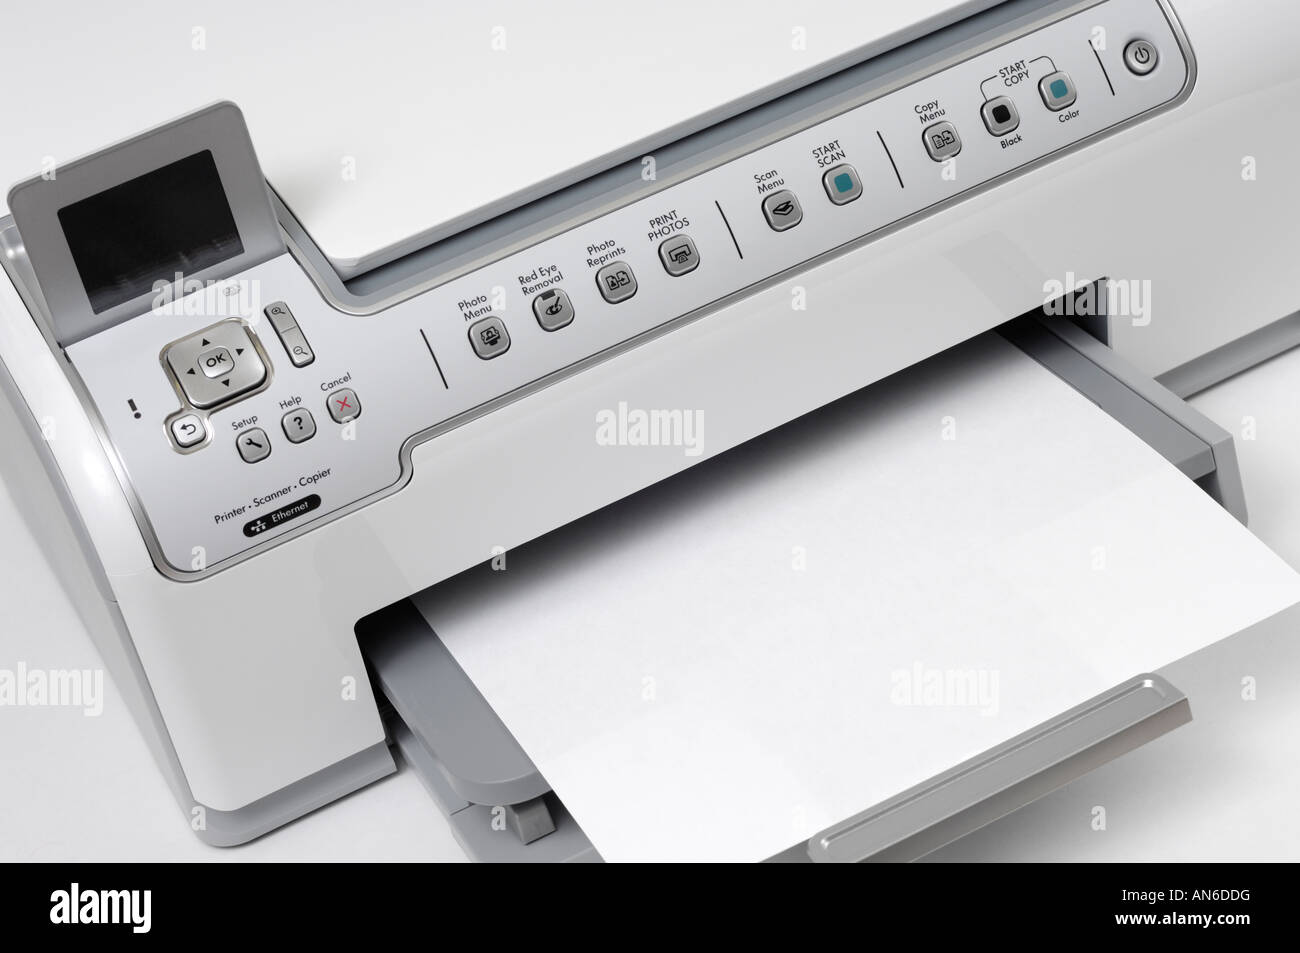 Tout-en-un jet d'moderne Logiciel HP Photosmart C6280 imprimante photo  copieur scanner Ethernet Photo Stock - Alamy